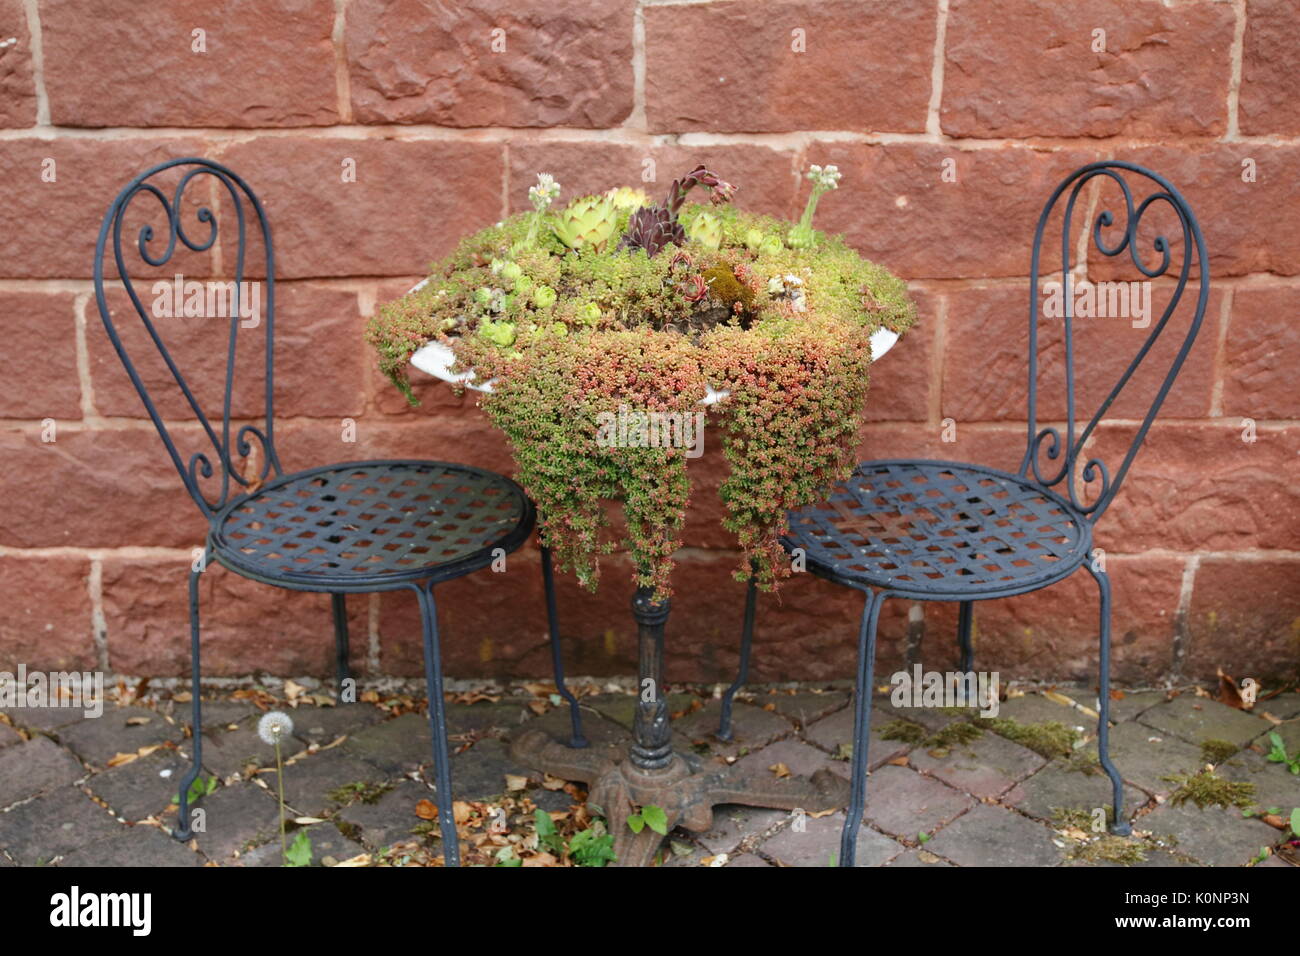 Hauswurz und Steinbrech wachsen wild und romantisch auf einem alten Stuhl und Tisch Stock Photo